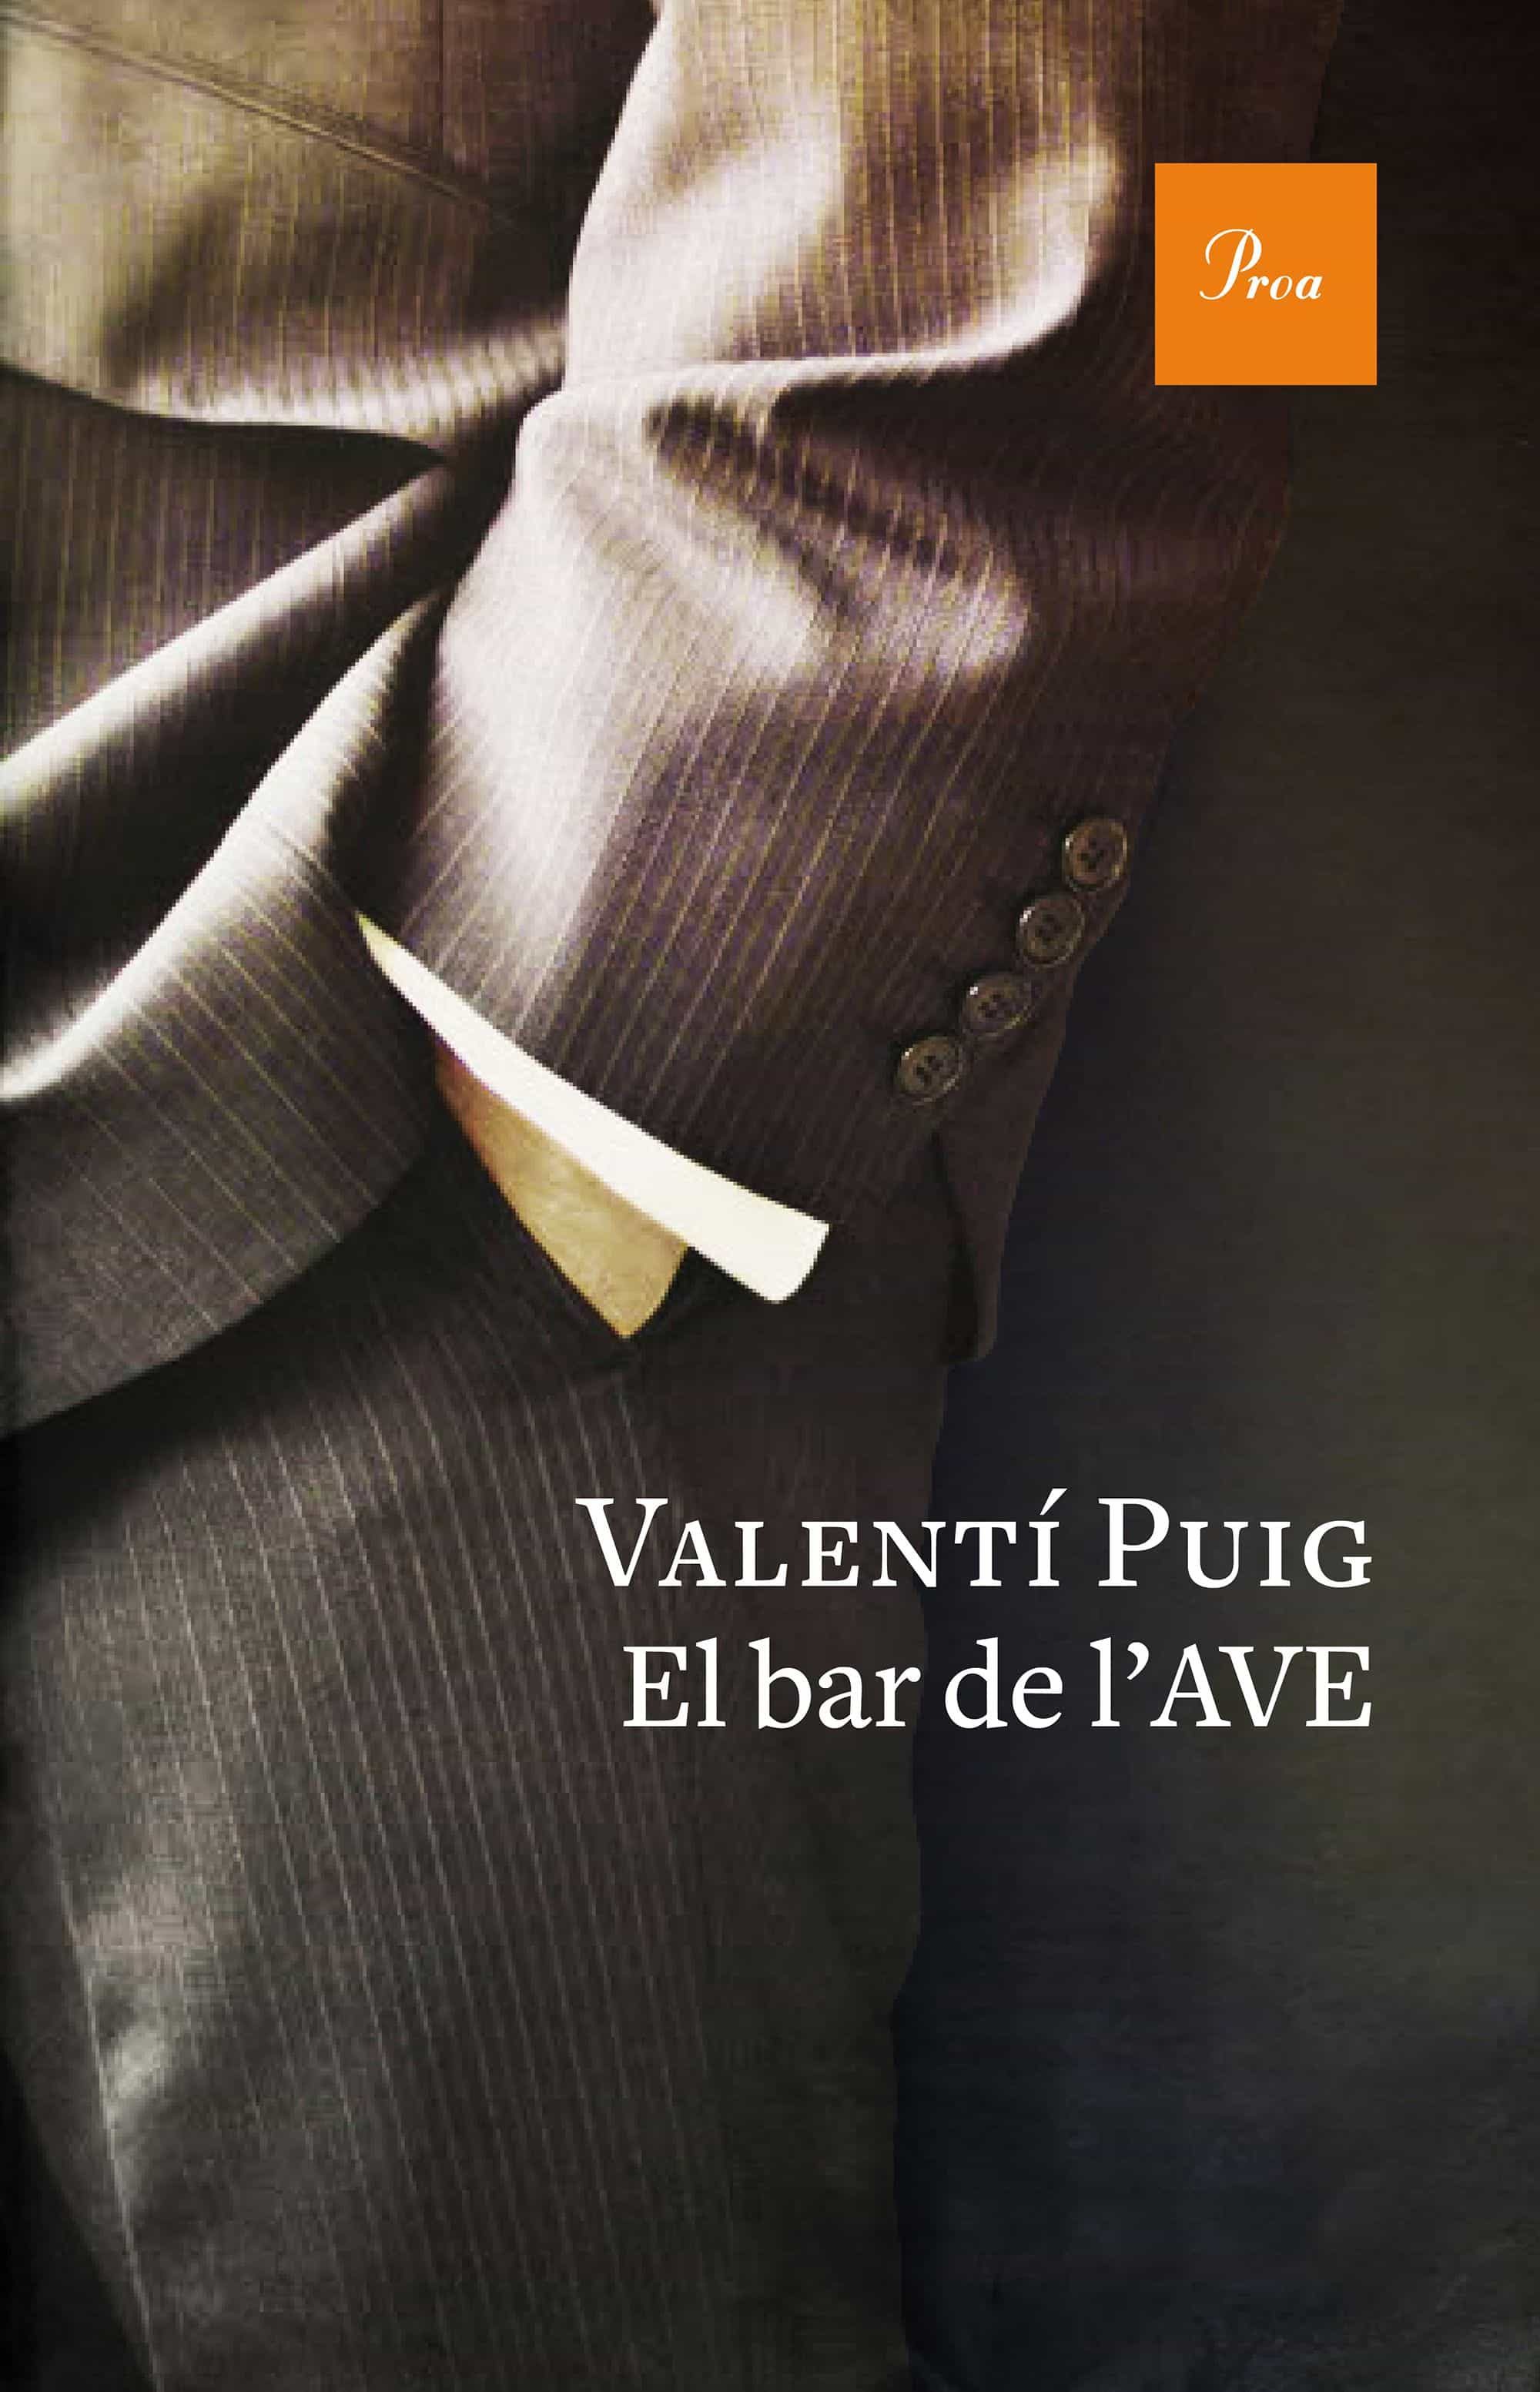 El bar de l'AVE - Valentí Puig 9788475886527